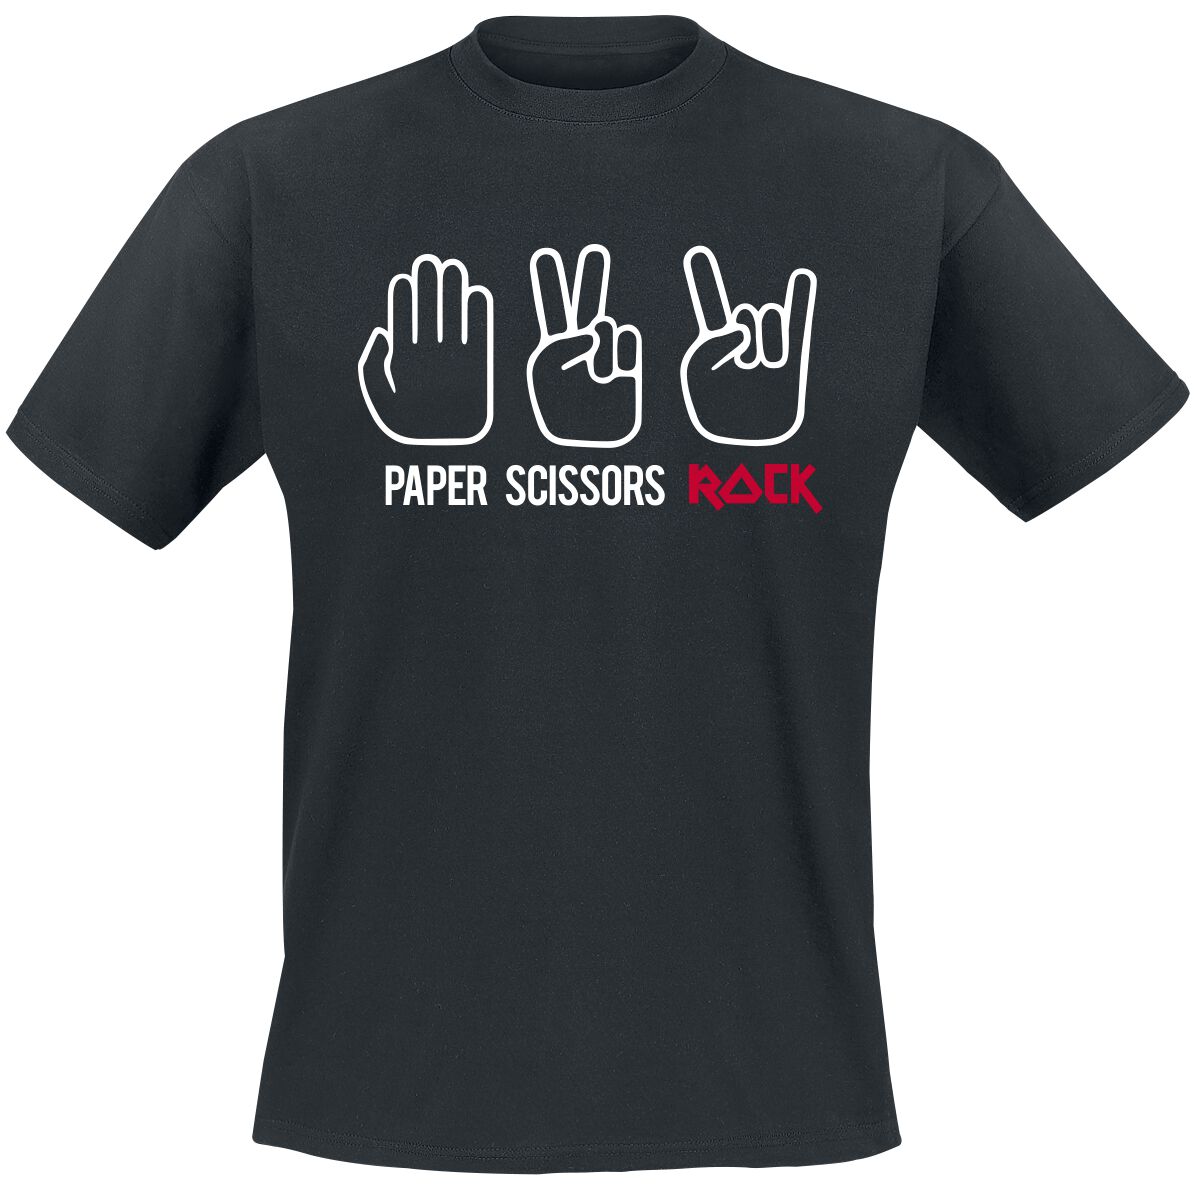 Sprüche T-Shirt - Paper Scissors Rock - S bis 3XL - für Männer - Größe XL - schwarz